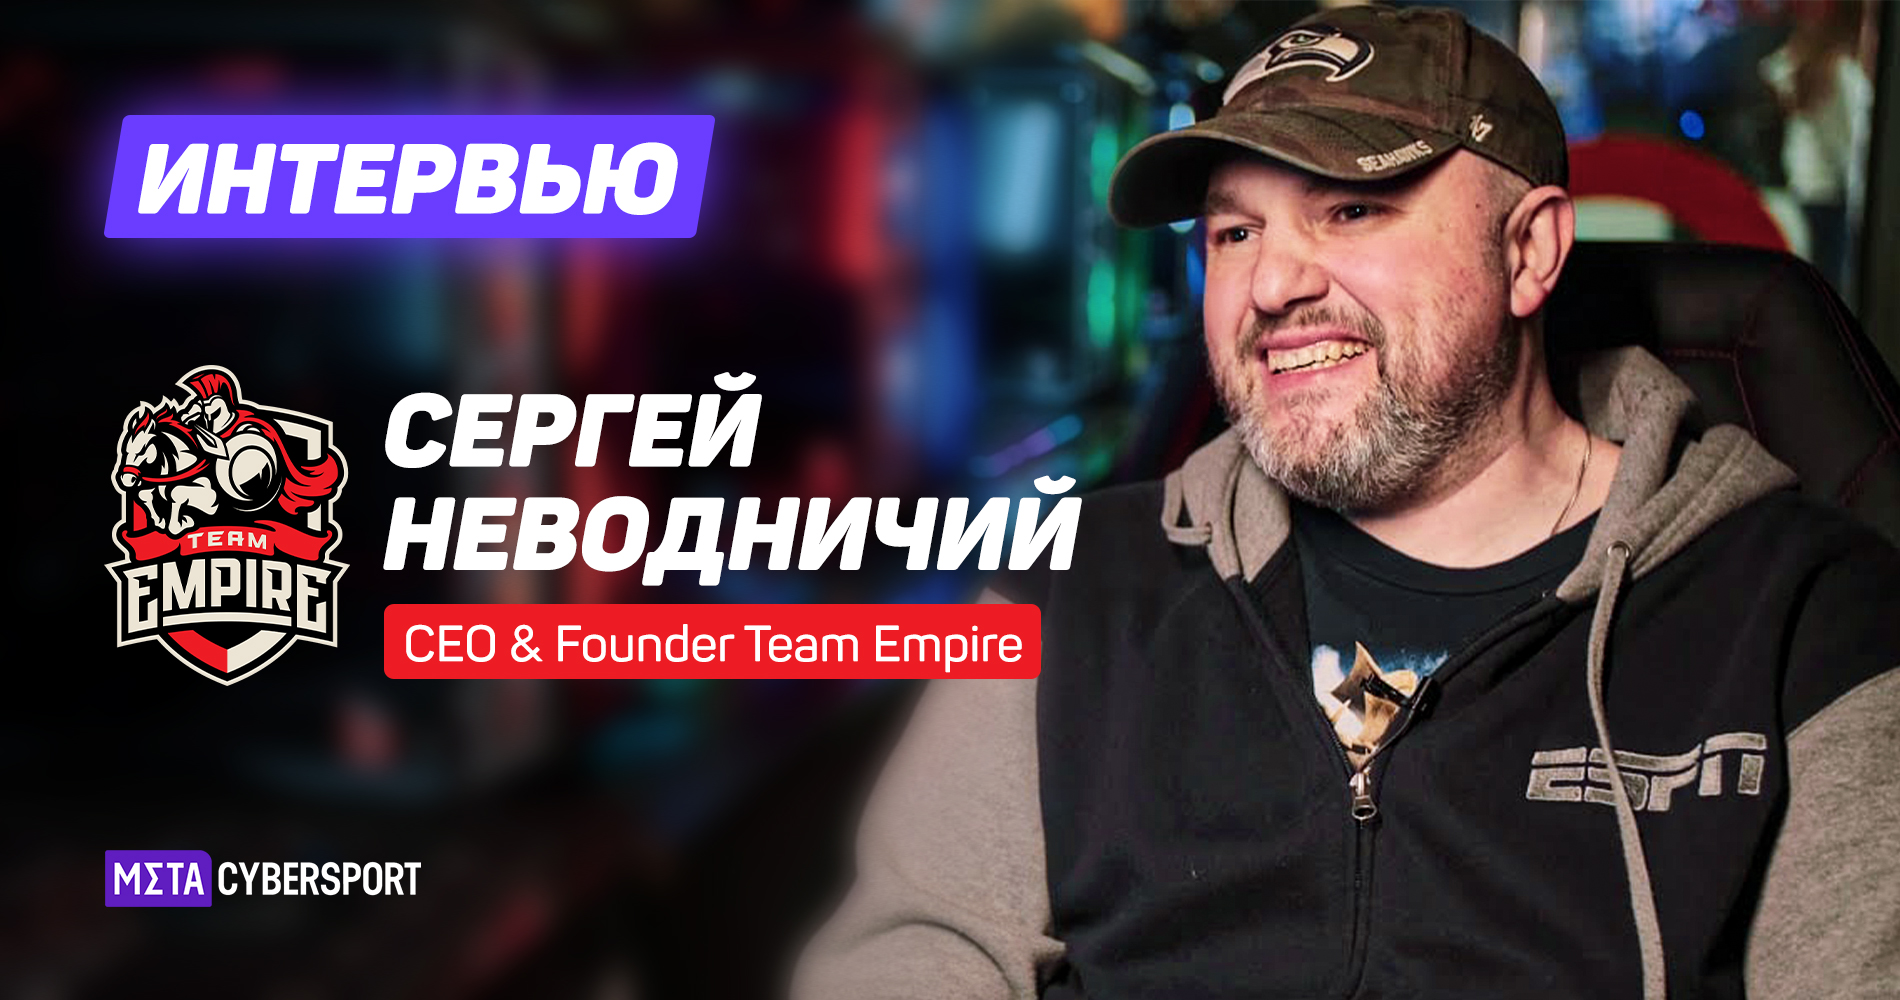 «Рынок продолжит развиваться». Интервью с CEO Team Empire о планах организации и перспективах киберспорта в РФ